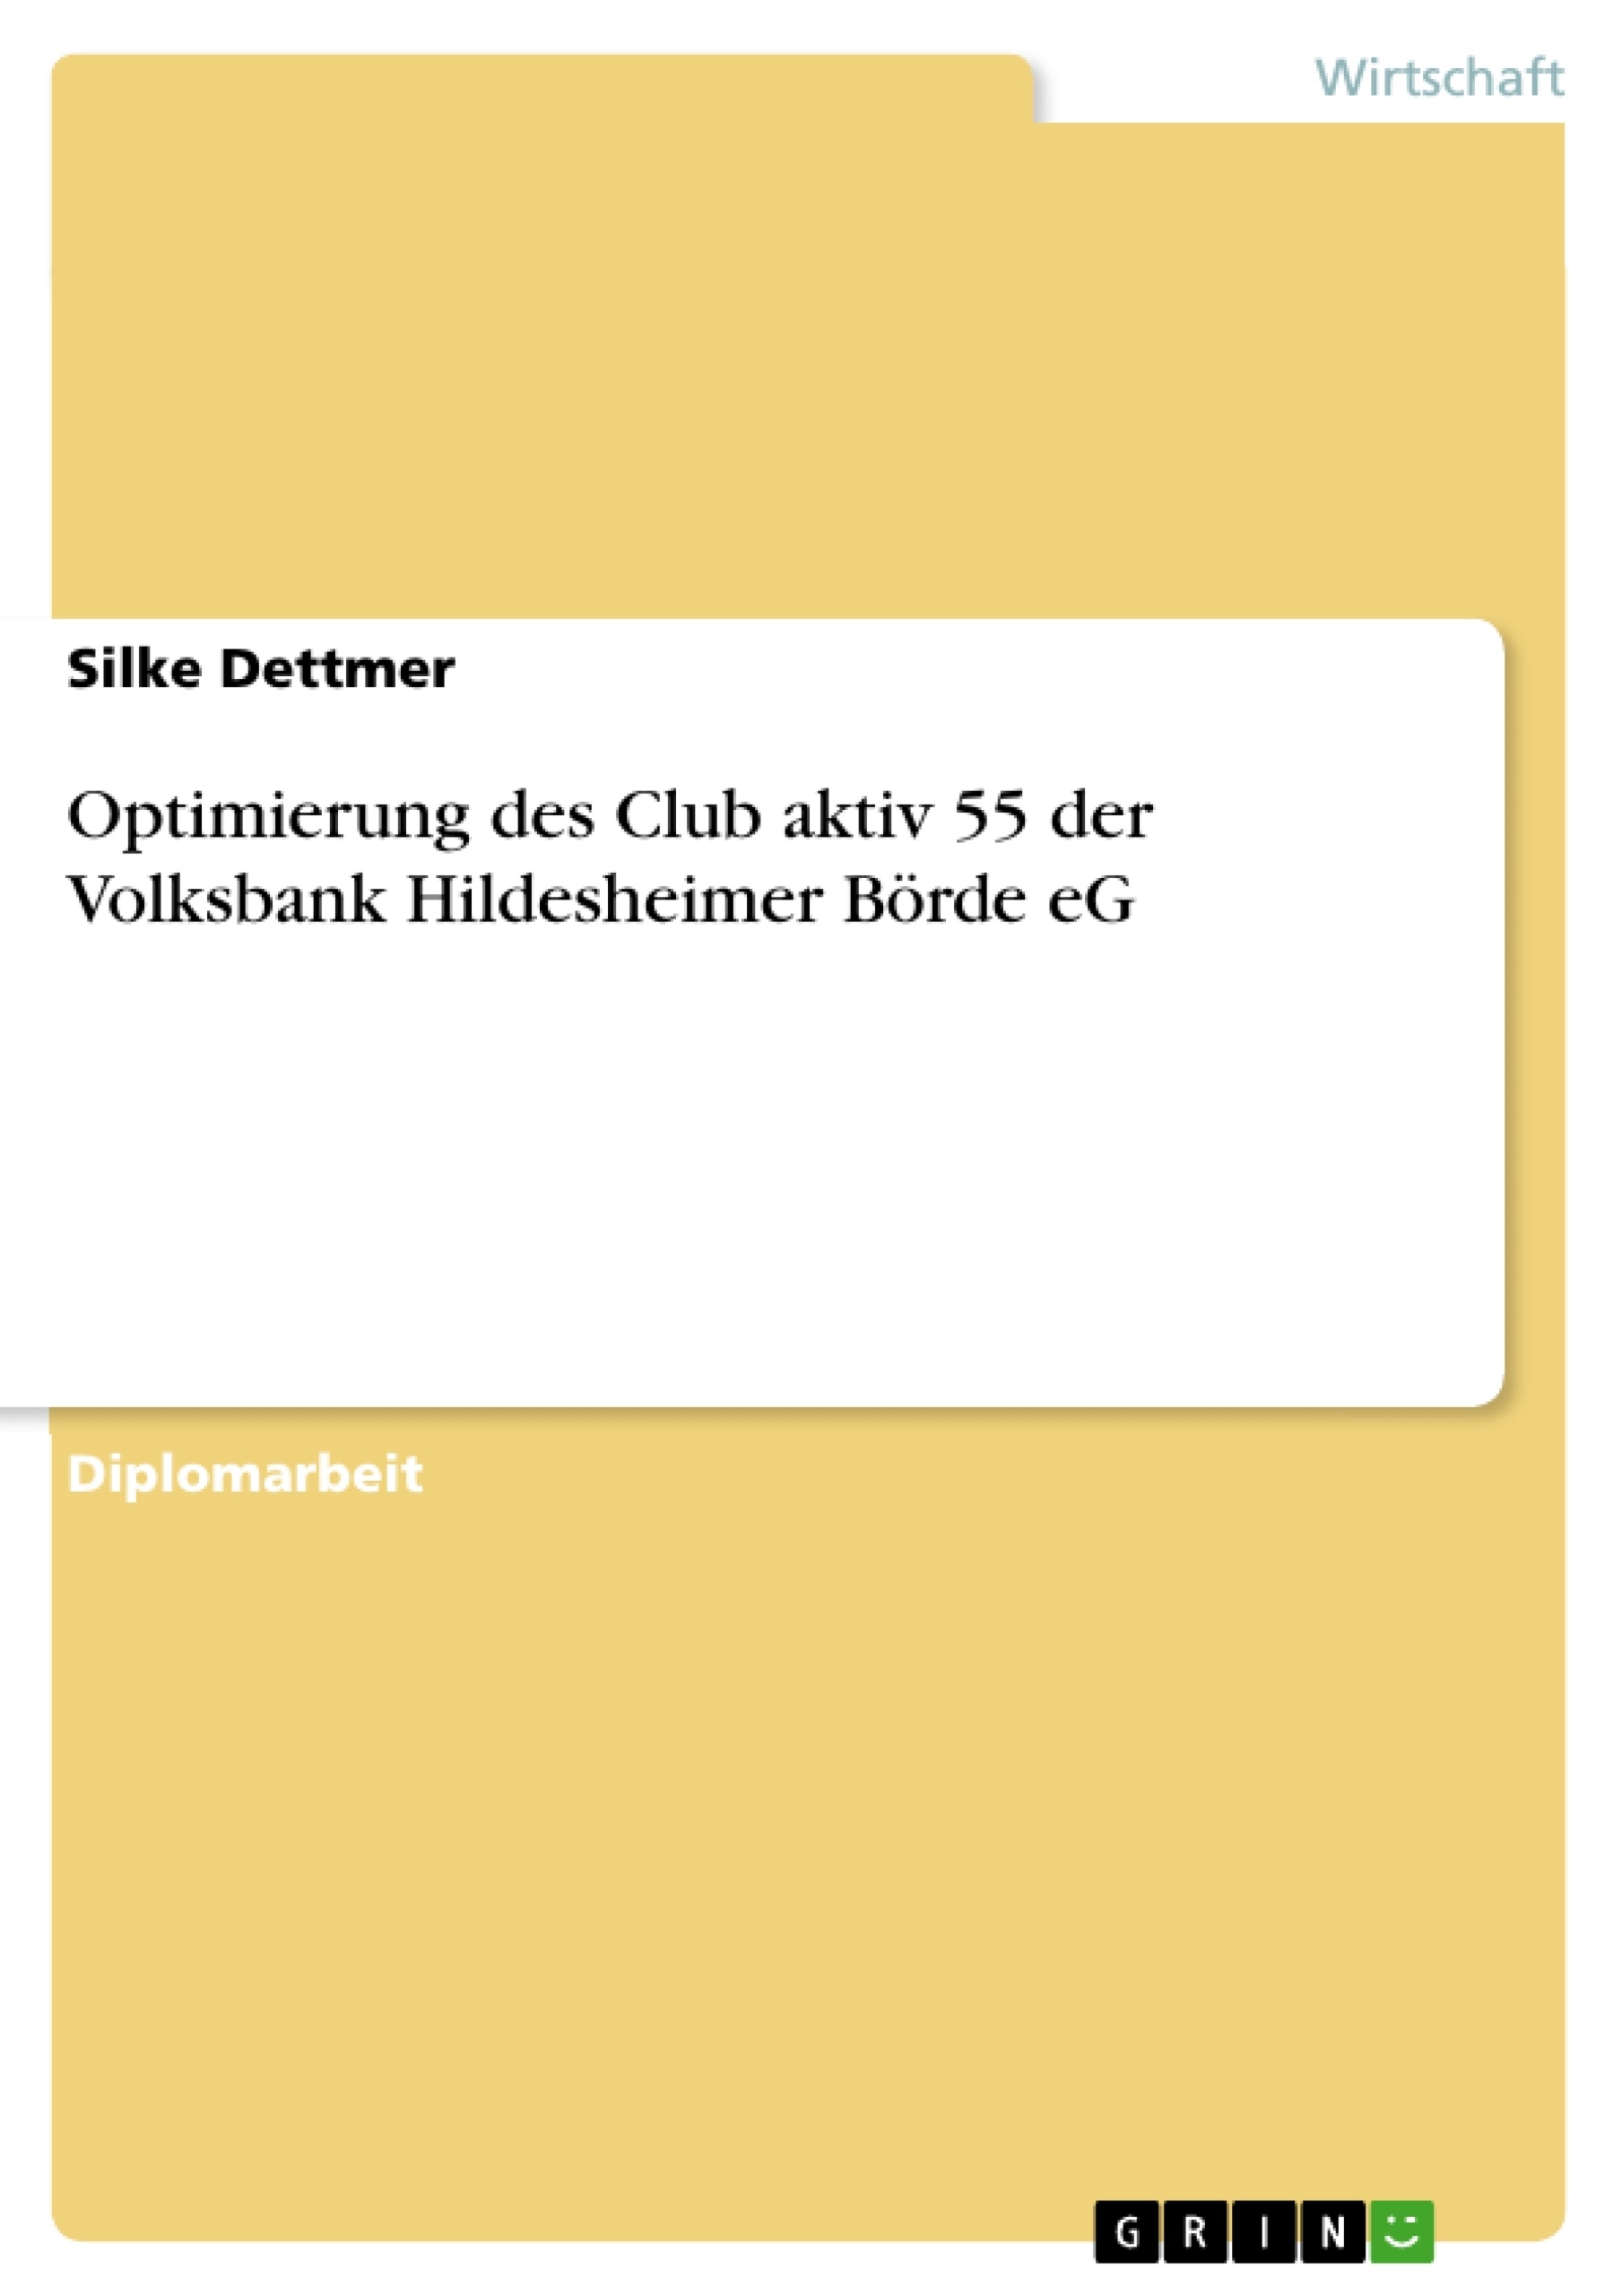 Title: Optimierung des Club aktiv 55 der Volksbank Hildesheimer Börde eG